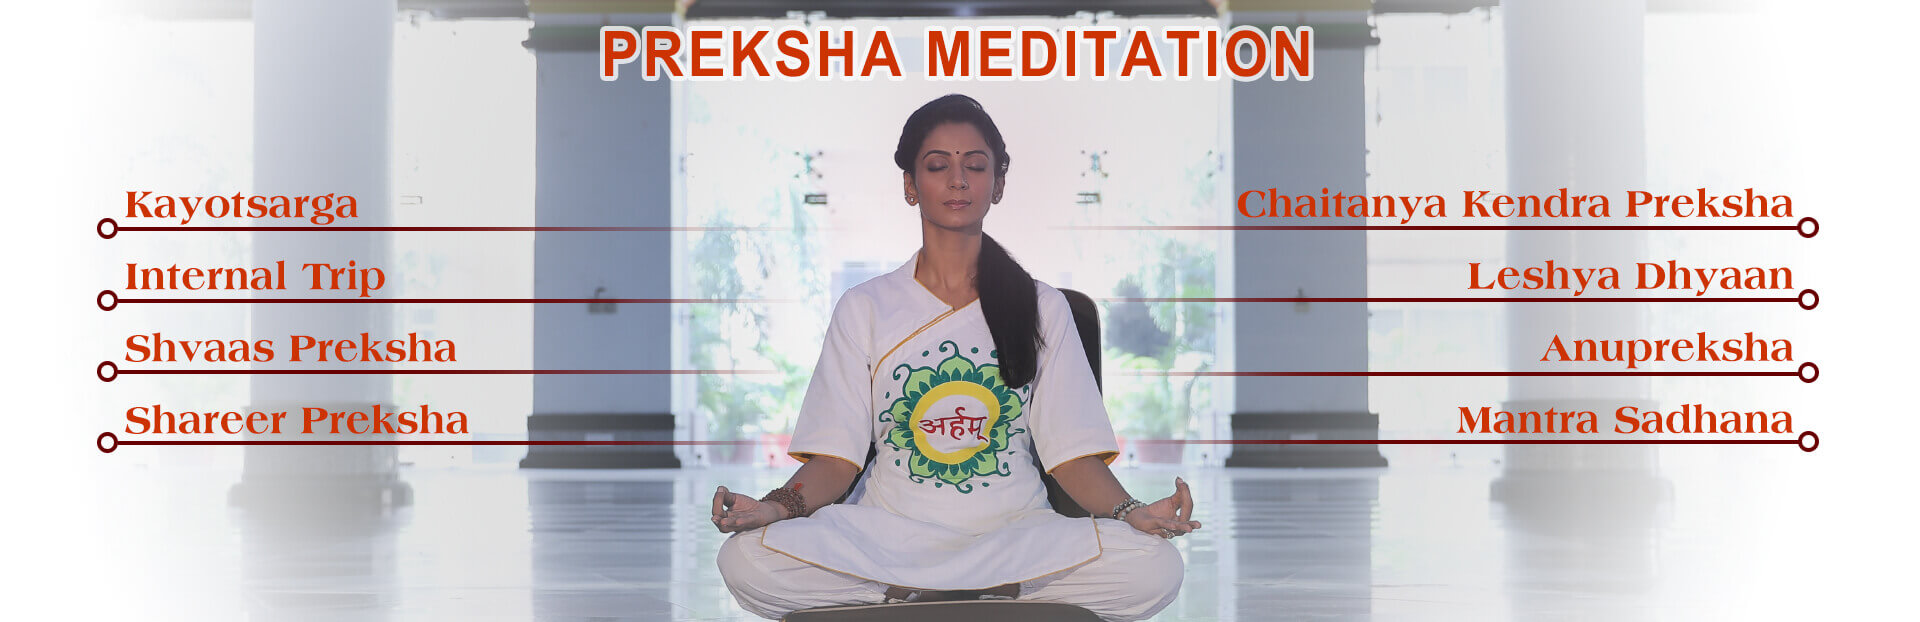 preksha Meditation